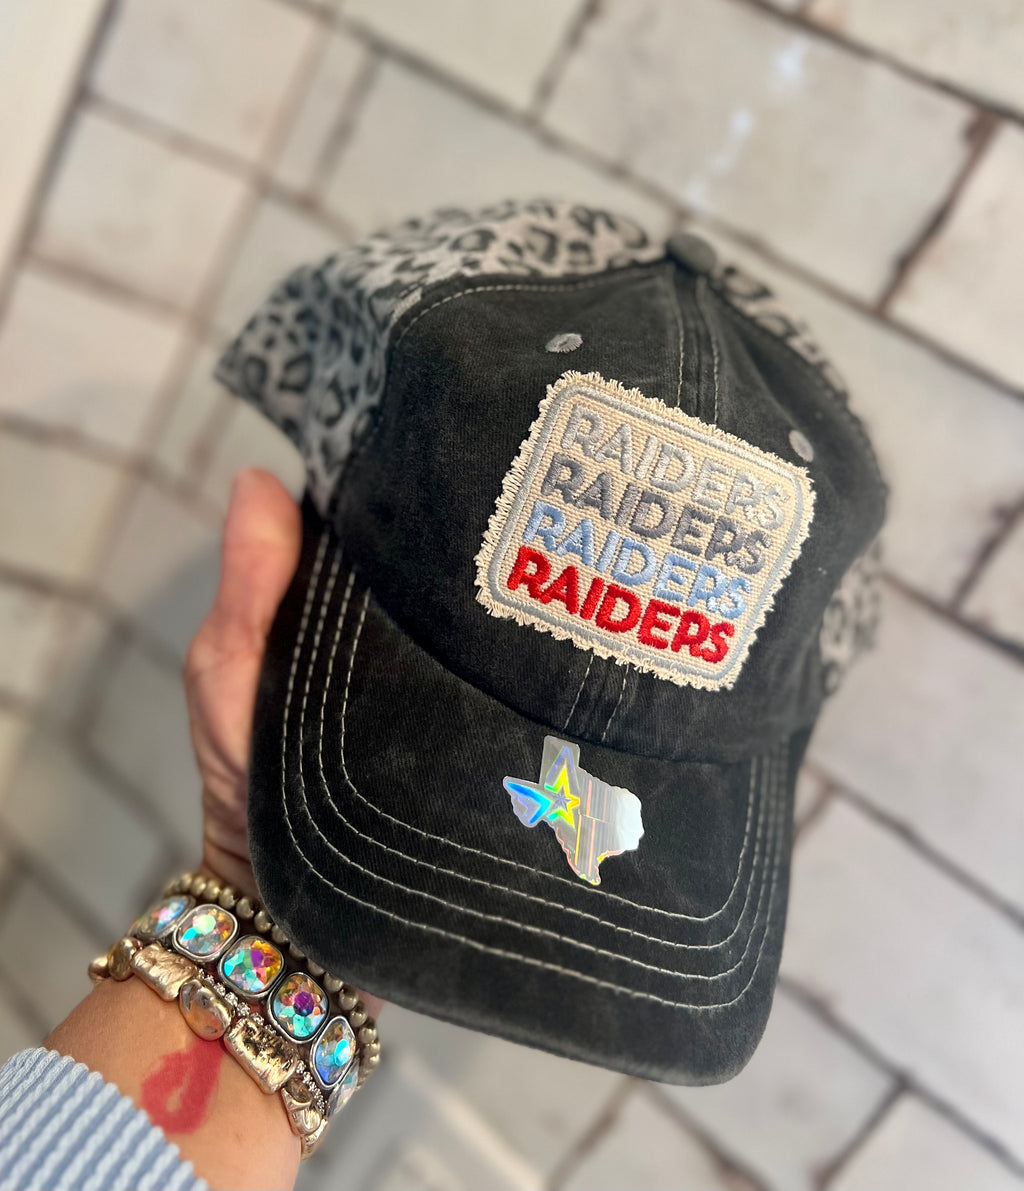 Raiders x4 on Grey/Leopard Cloth